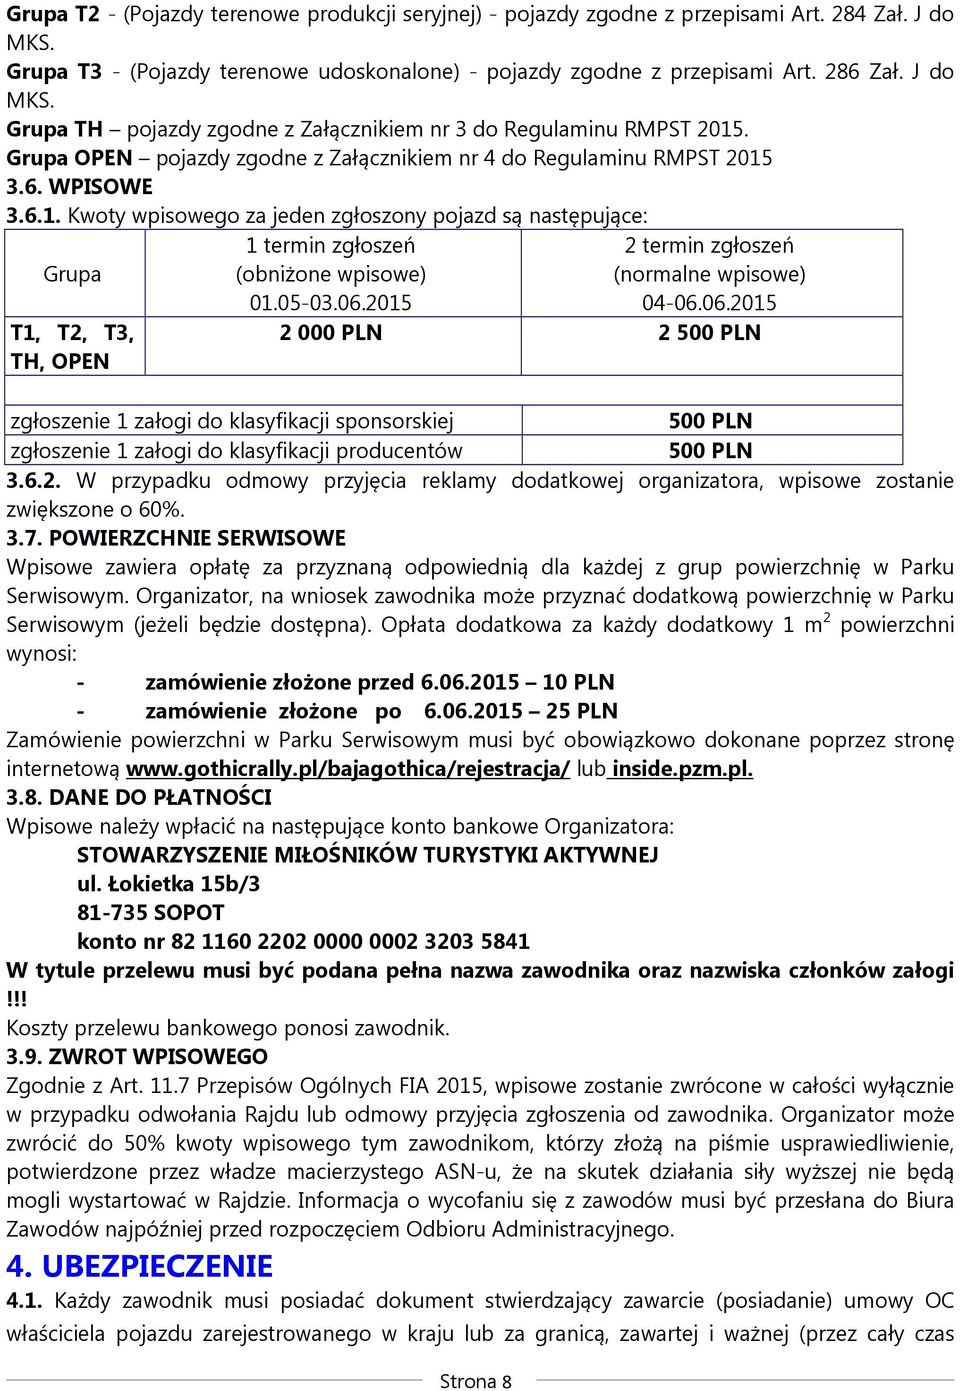 05-03.06.2015 zgłoszenie 1 załogi do klasyfikacji sponsorskiej zgłoszenie 1 załogi do klasyfikacji producentów Strona 8 2 termin zgłoszeń (normalne wpisowe) 04-06.06.2015 2 000 PLN 2 500 PLN 500 PLN 500 PLN 3.